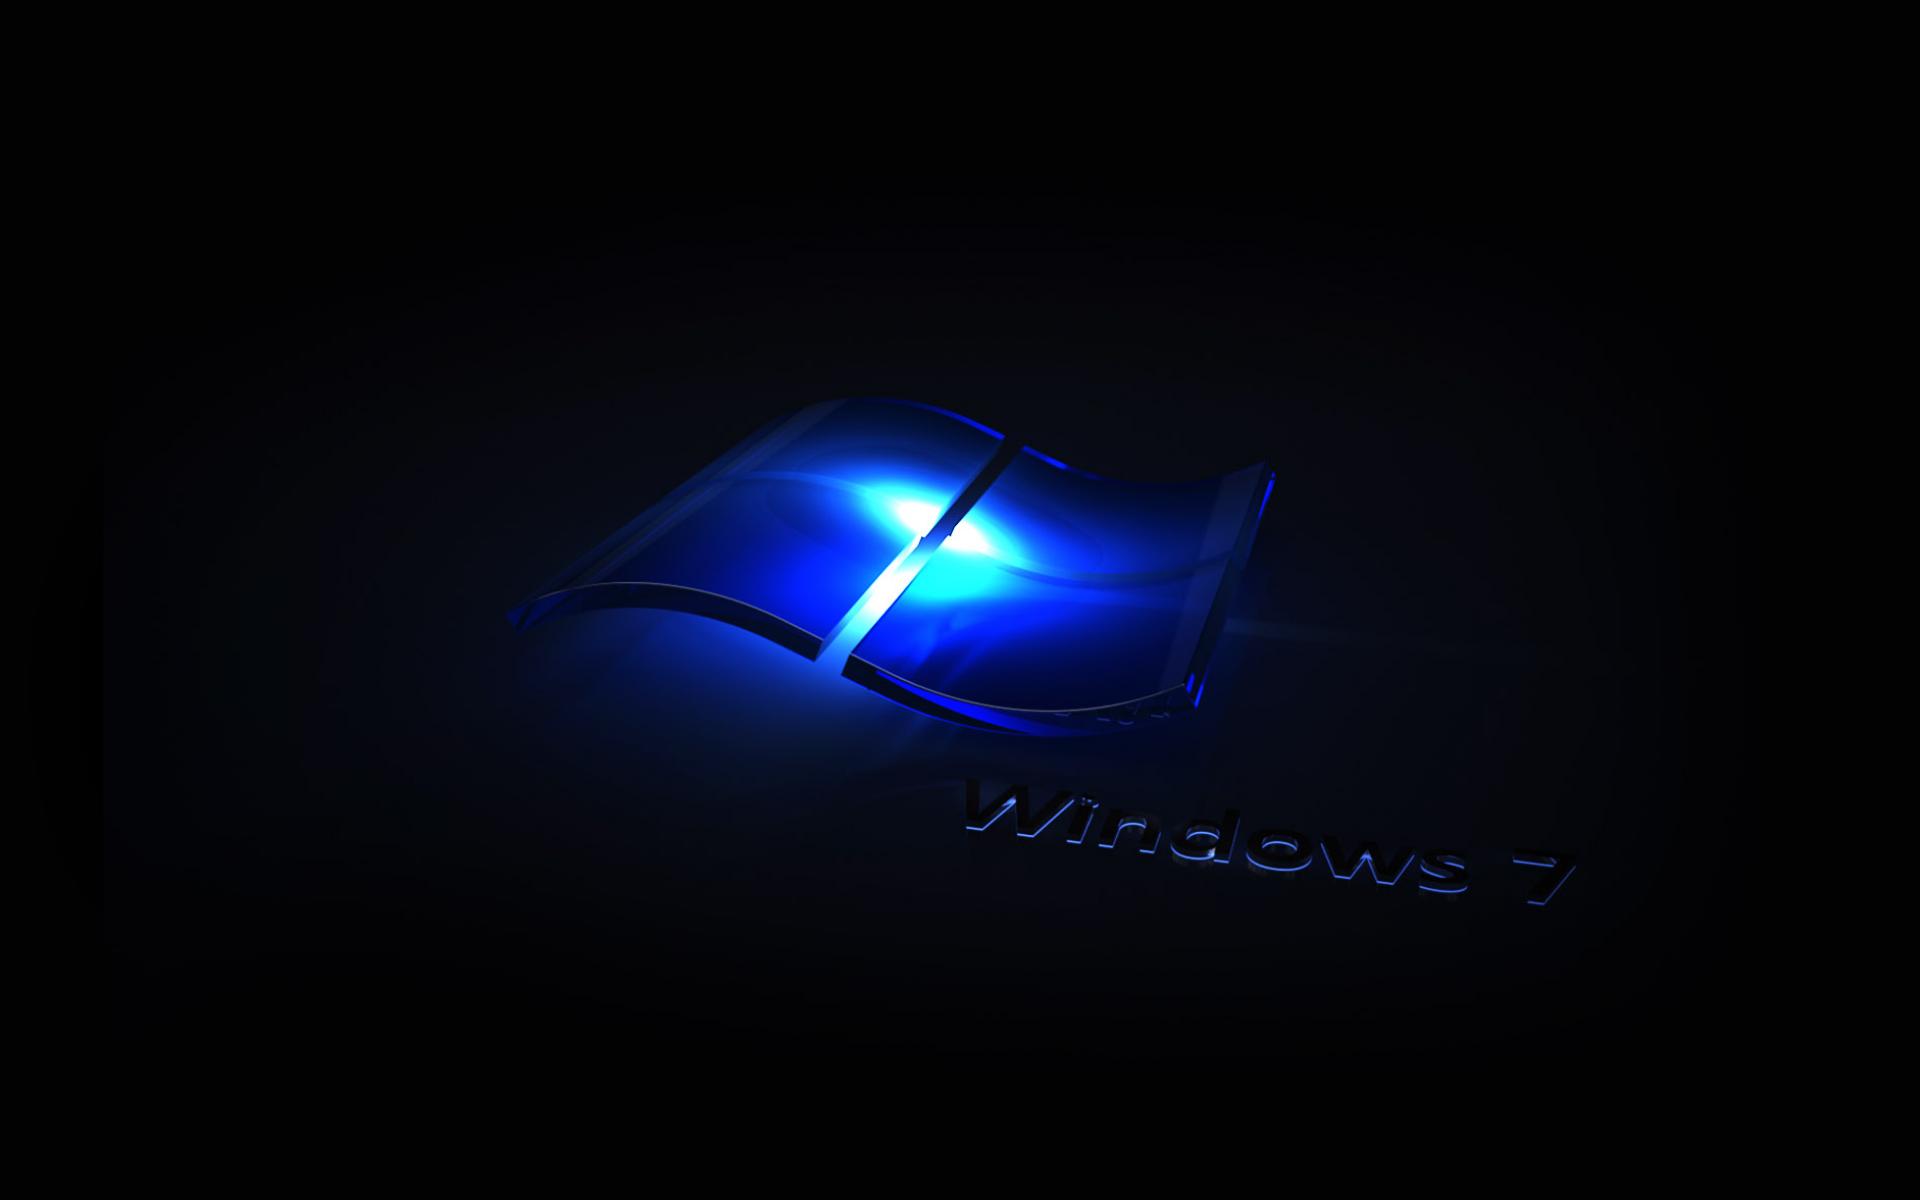 Sfondi Desktop Windows 7 Natalizi.Personalizza Il Tuo Desktop Con I Nuovi Sfondi Per Windows Seven